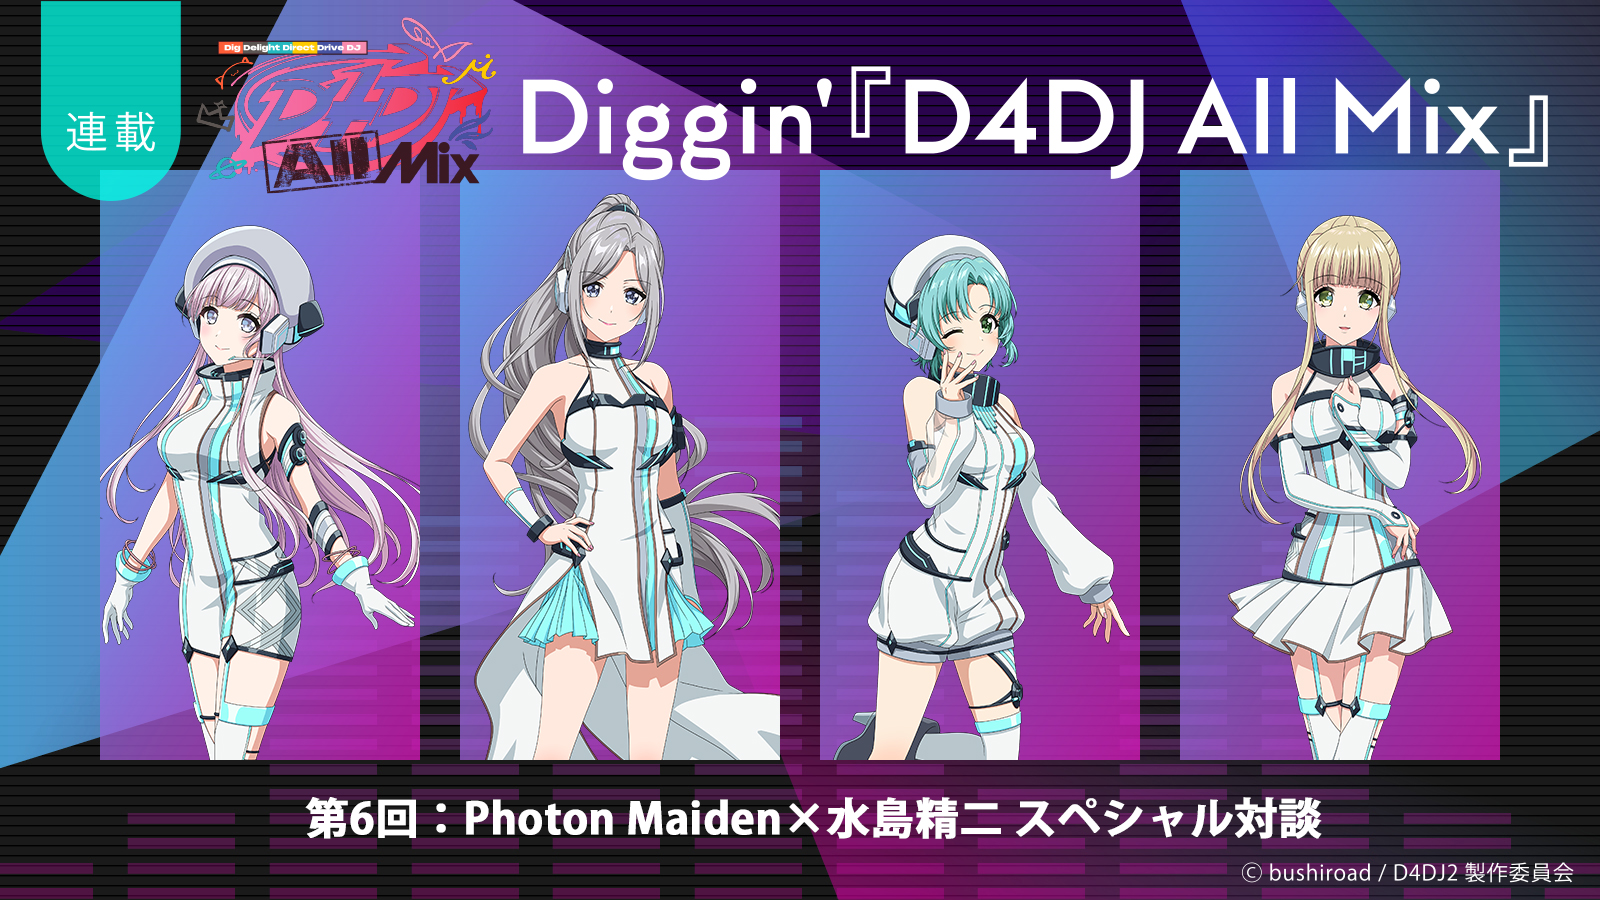 【連載】Diggin’『D4DJ All Mix』第6回：究極の“かわいい”自己紹介ソングが爆誕！――Photon Maiden×水島精二総監督スペシャル対談 - 画像一覧（7/7）